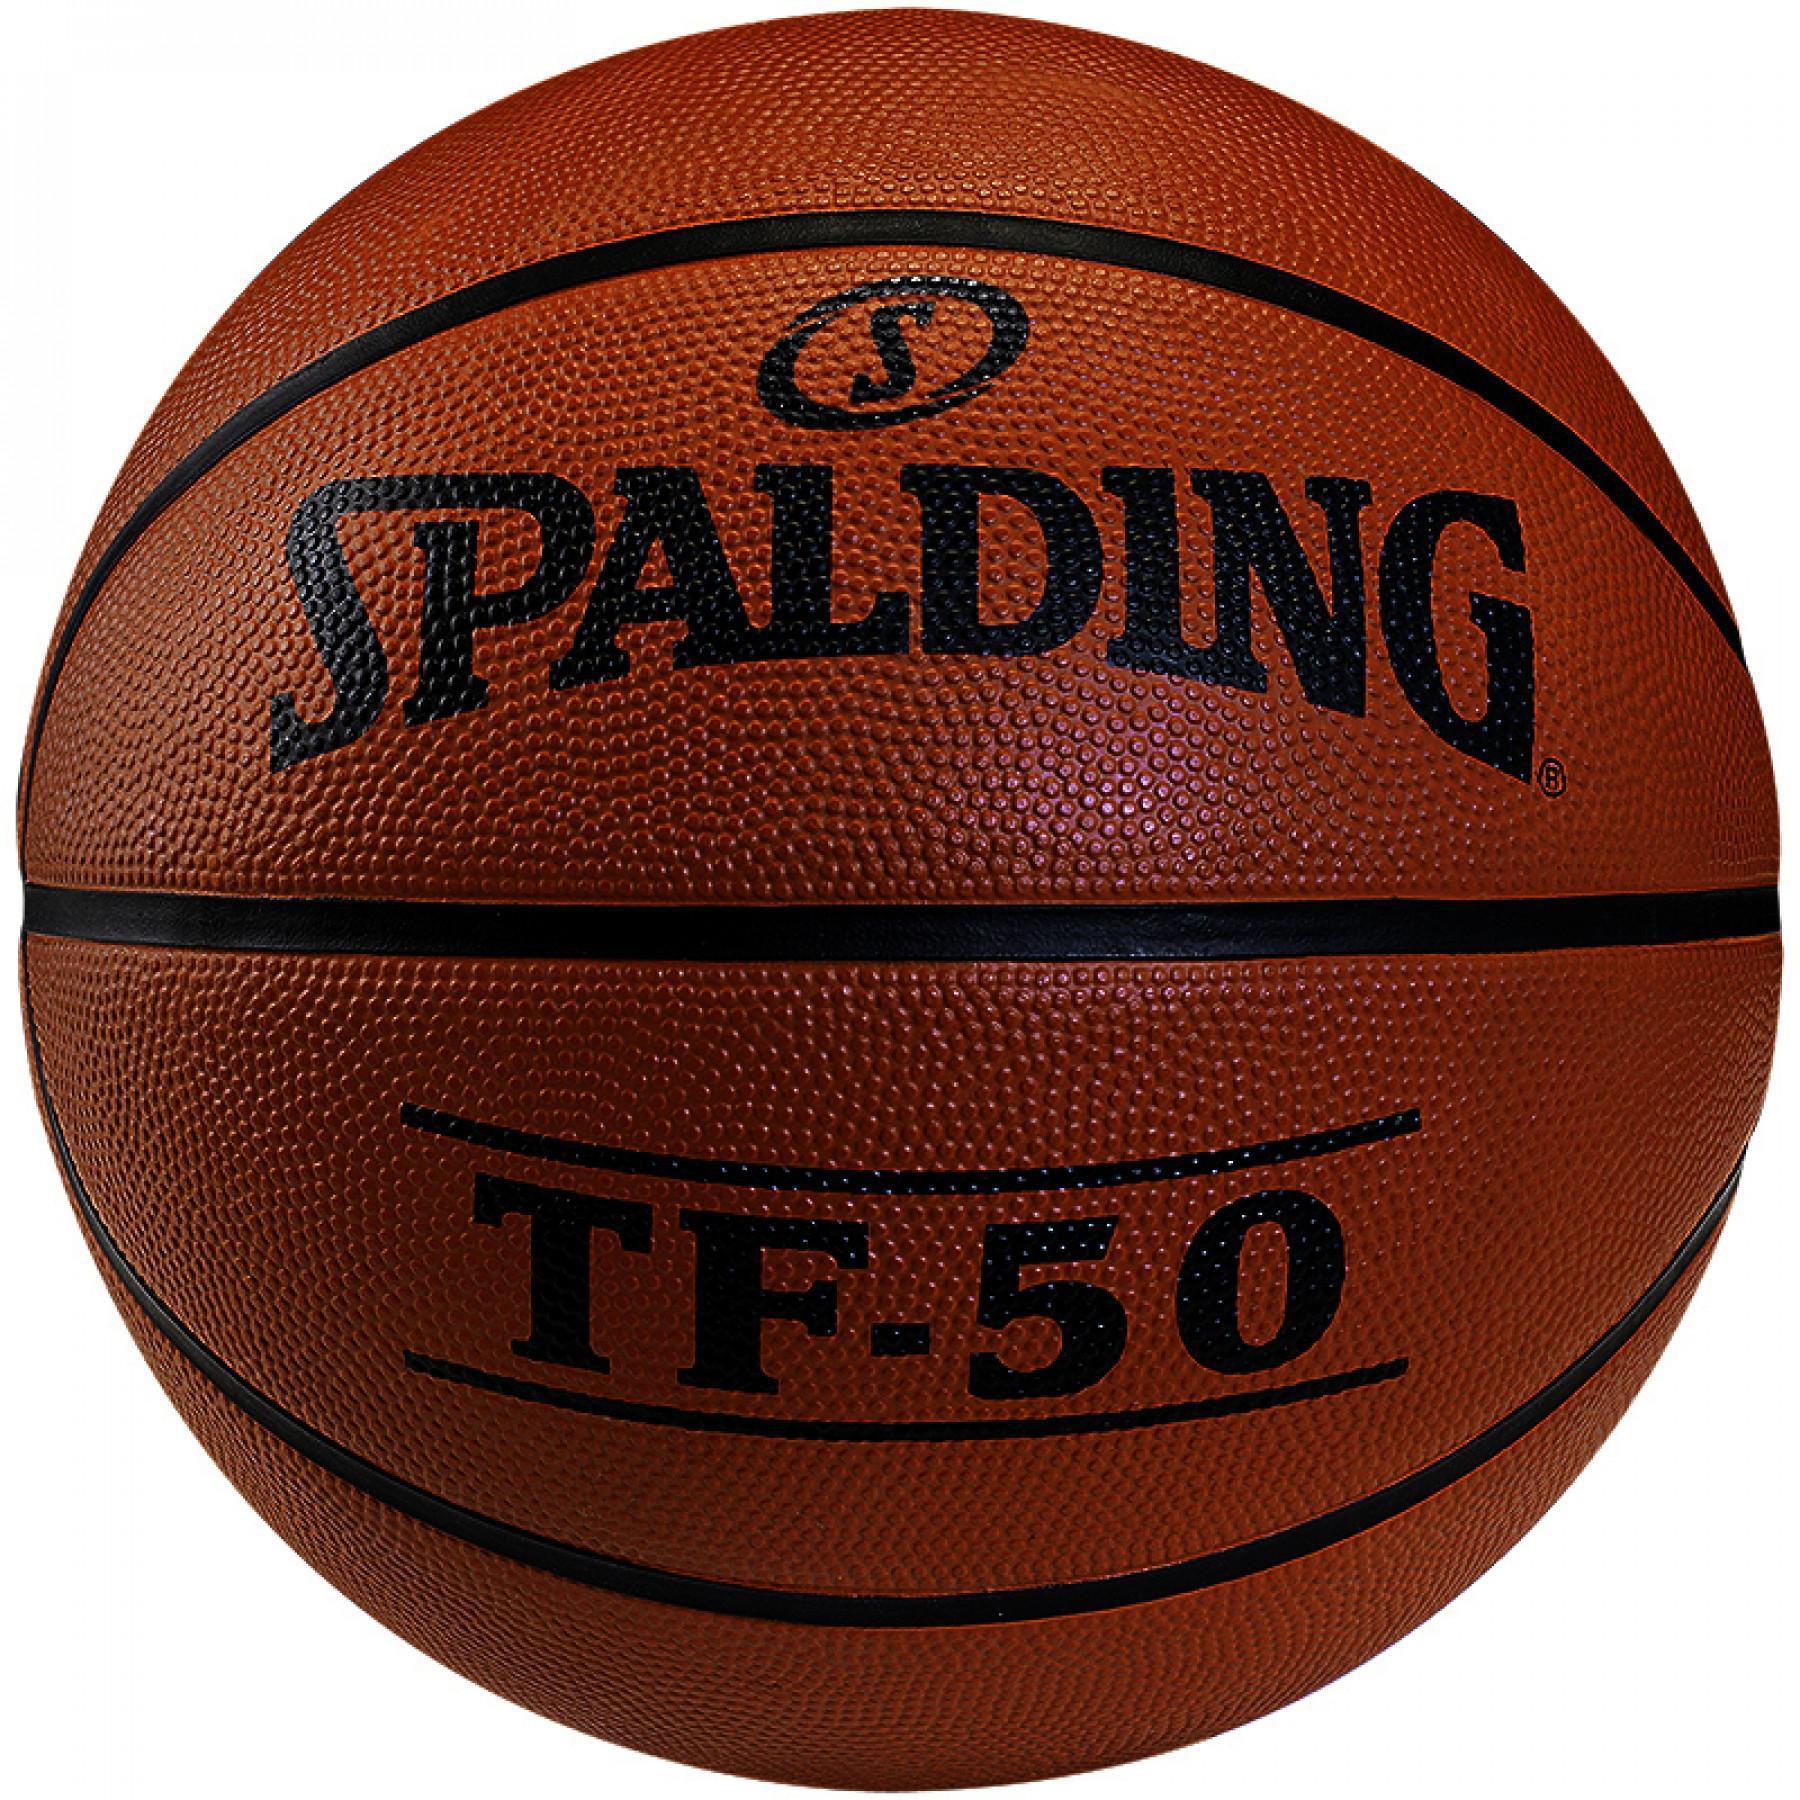 Ballong Spalding TF50 Outdoor